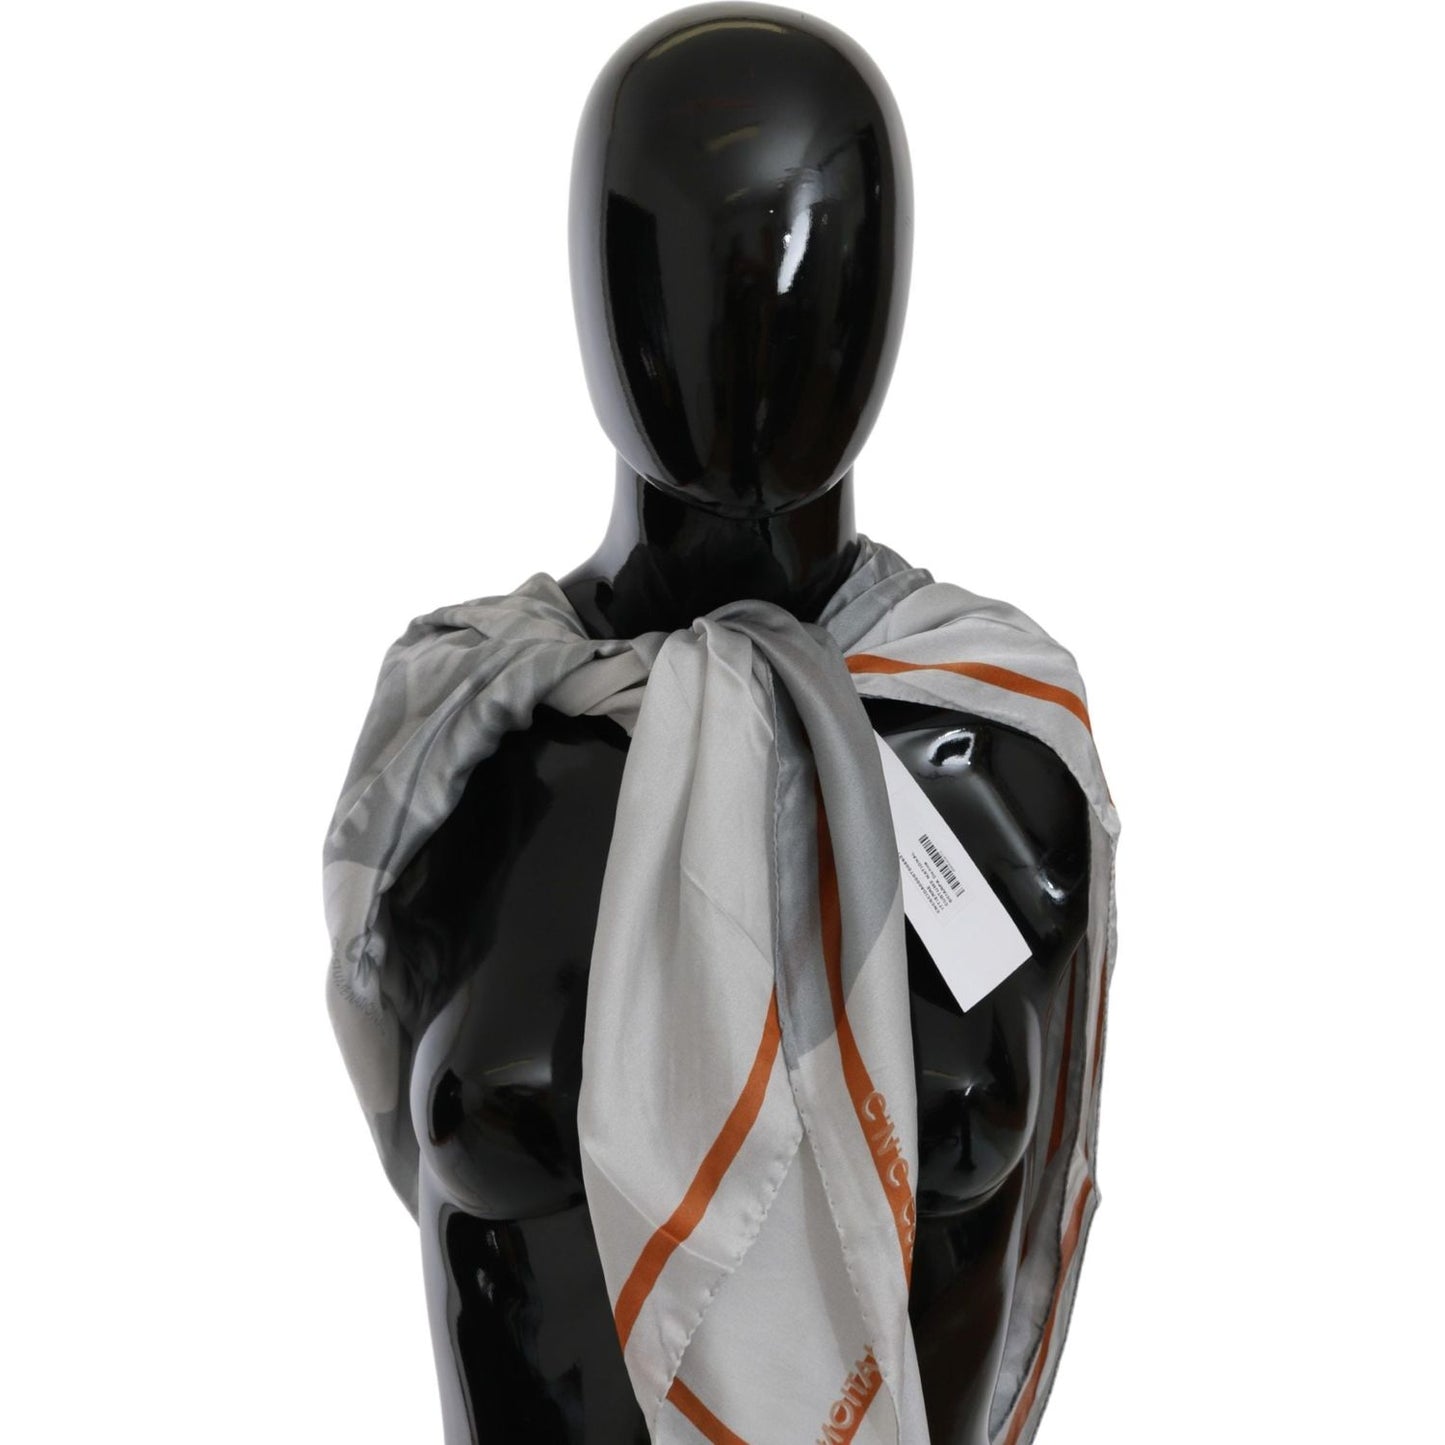 Costume National Elegant Floral Printed Silk Scarf gray-orange-silk-floral-foulard-wrap-scarf Silk Wrap Shawls IMG_0293-scaled-d57e6183-563.jpg